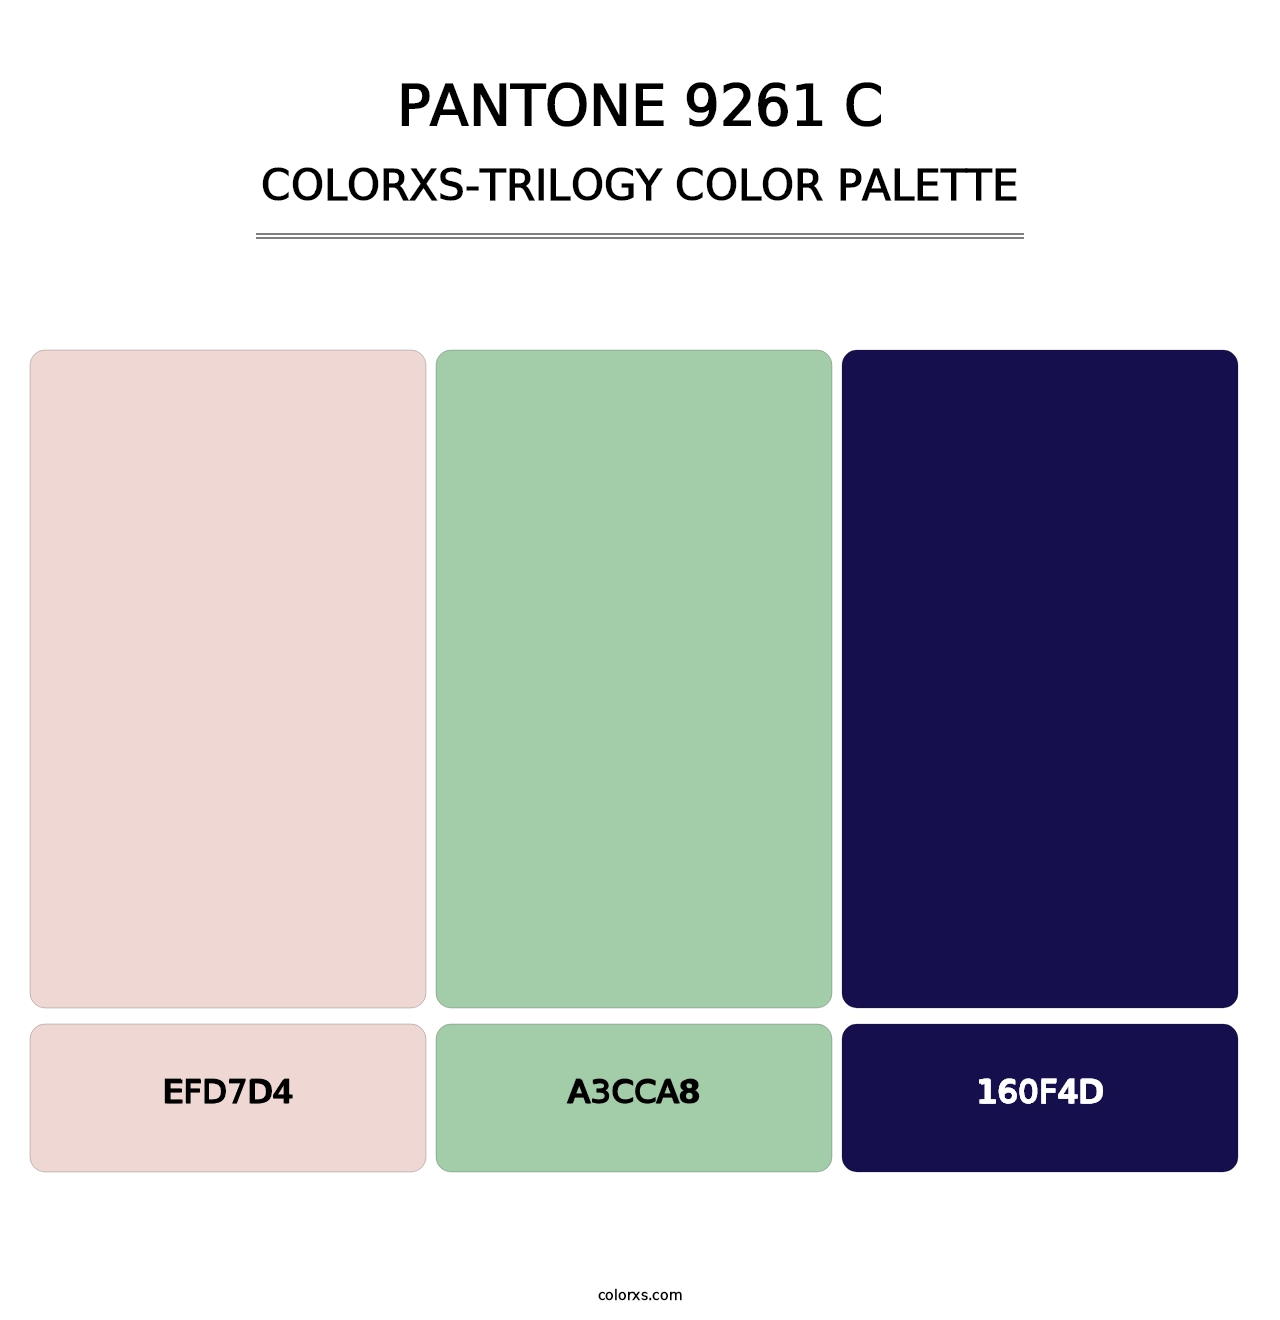 PANTONE 9261 C - Colorxs Trilogy Palette